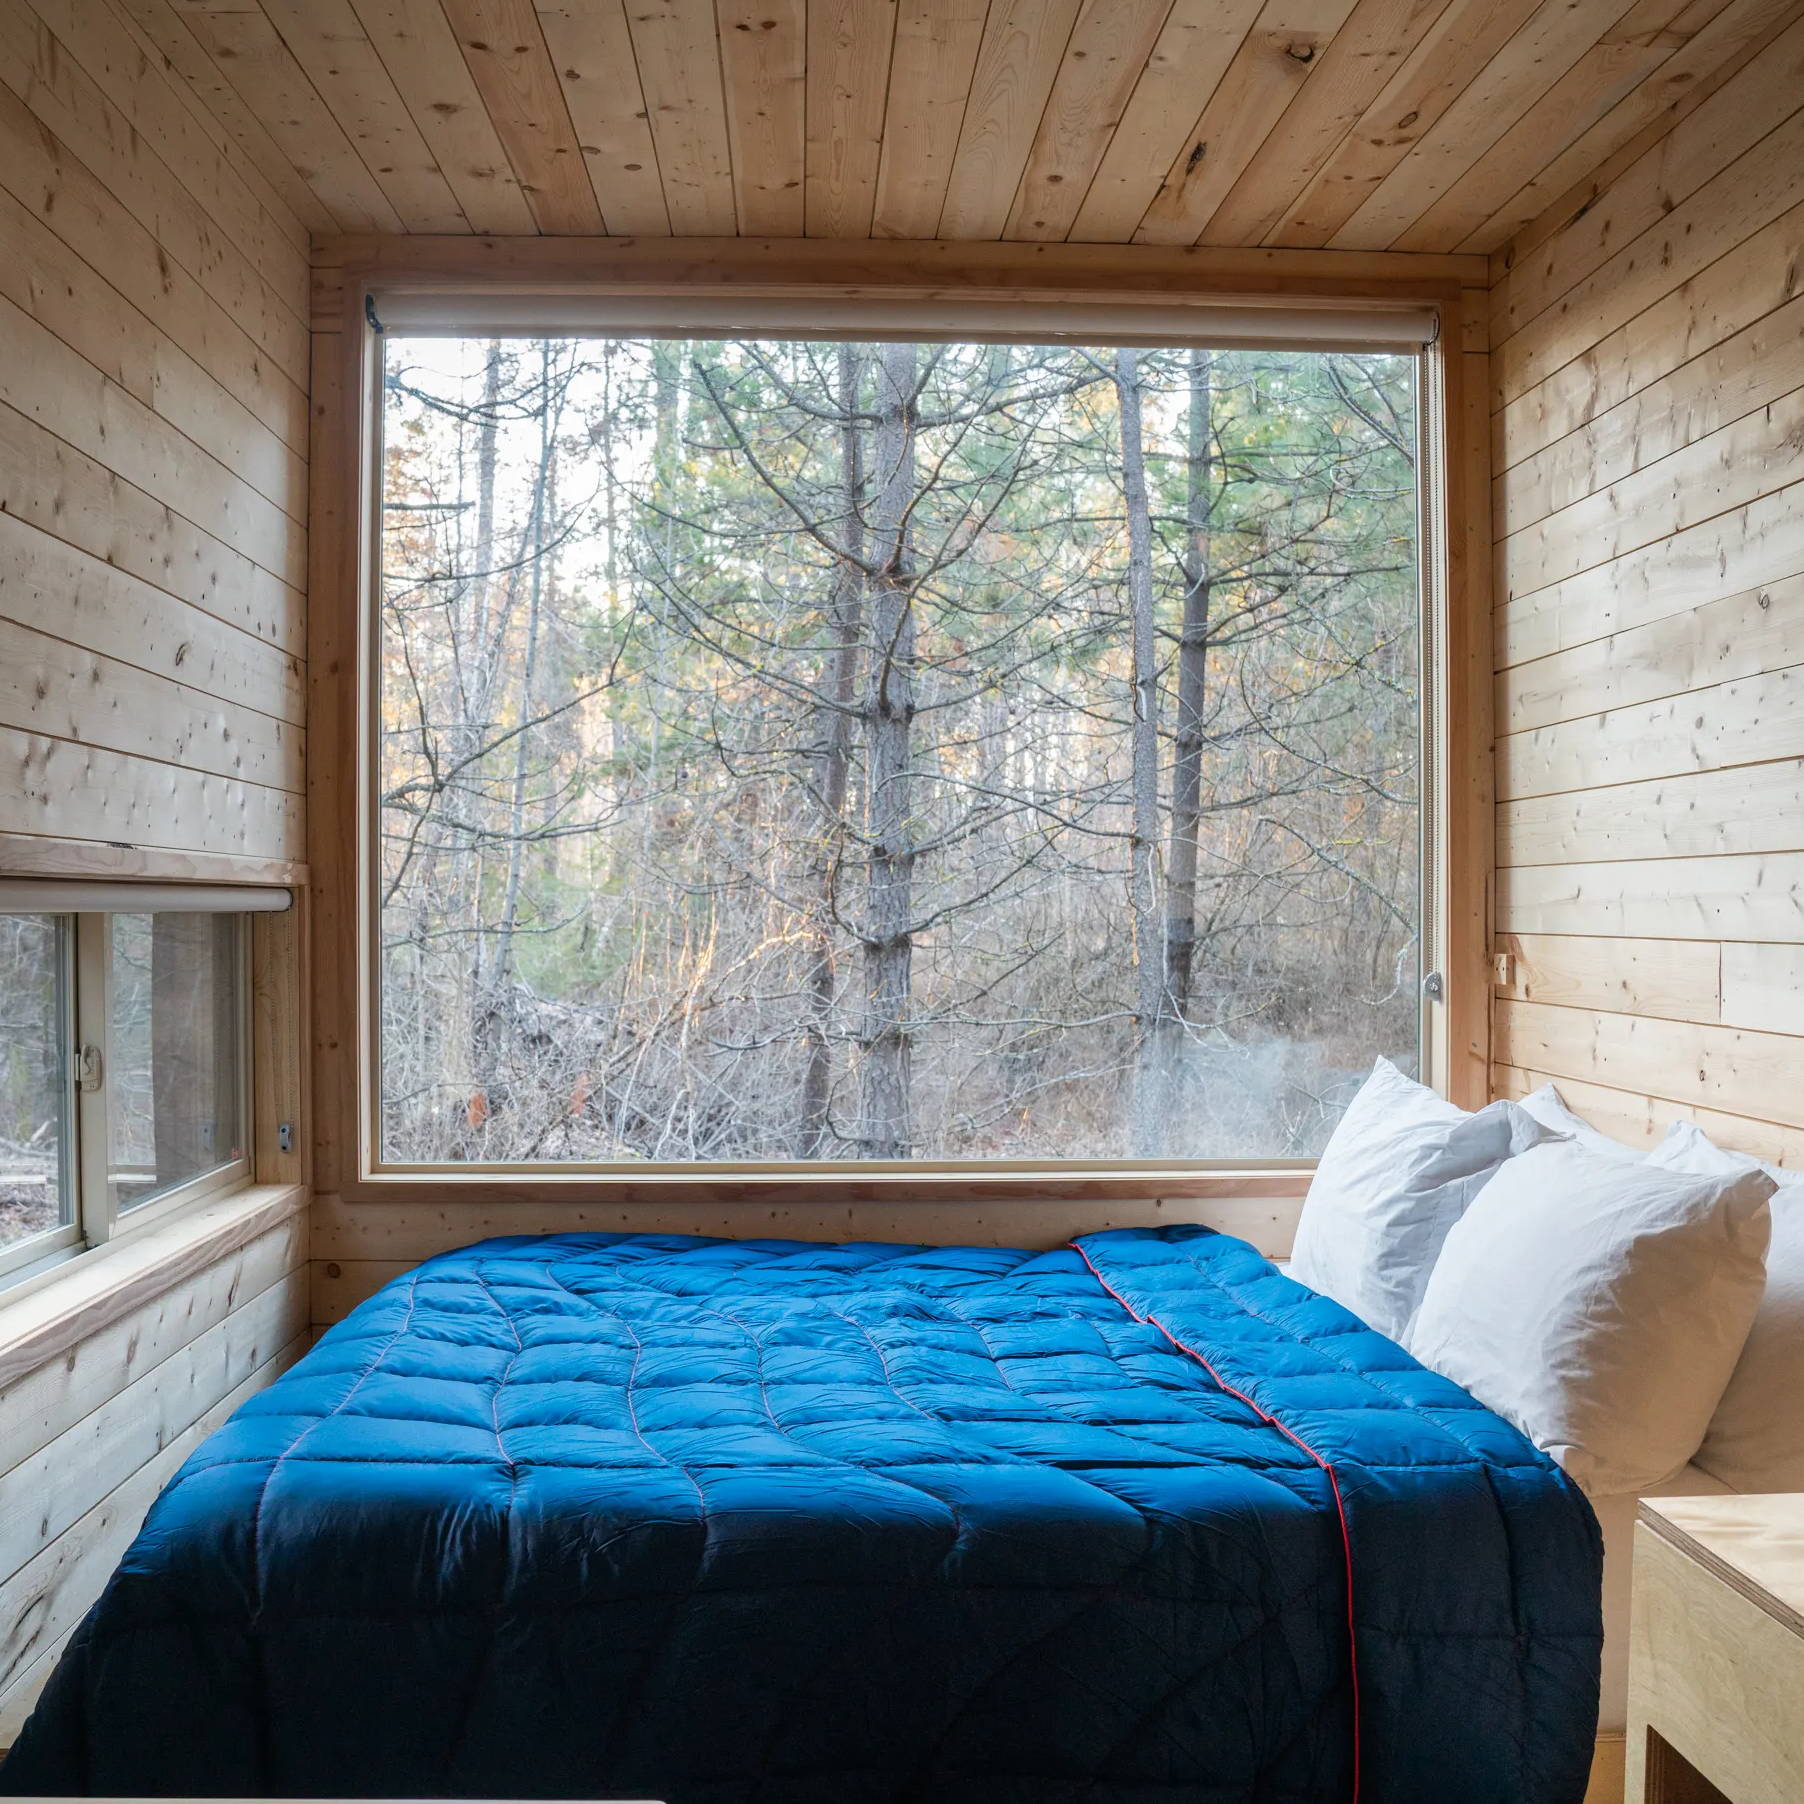 Rumpl deepwater blanket inside a Getaway cabin